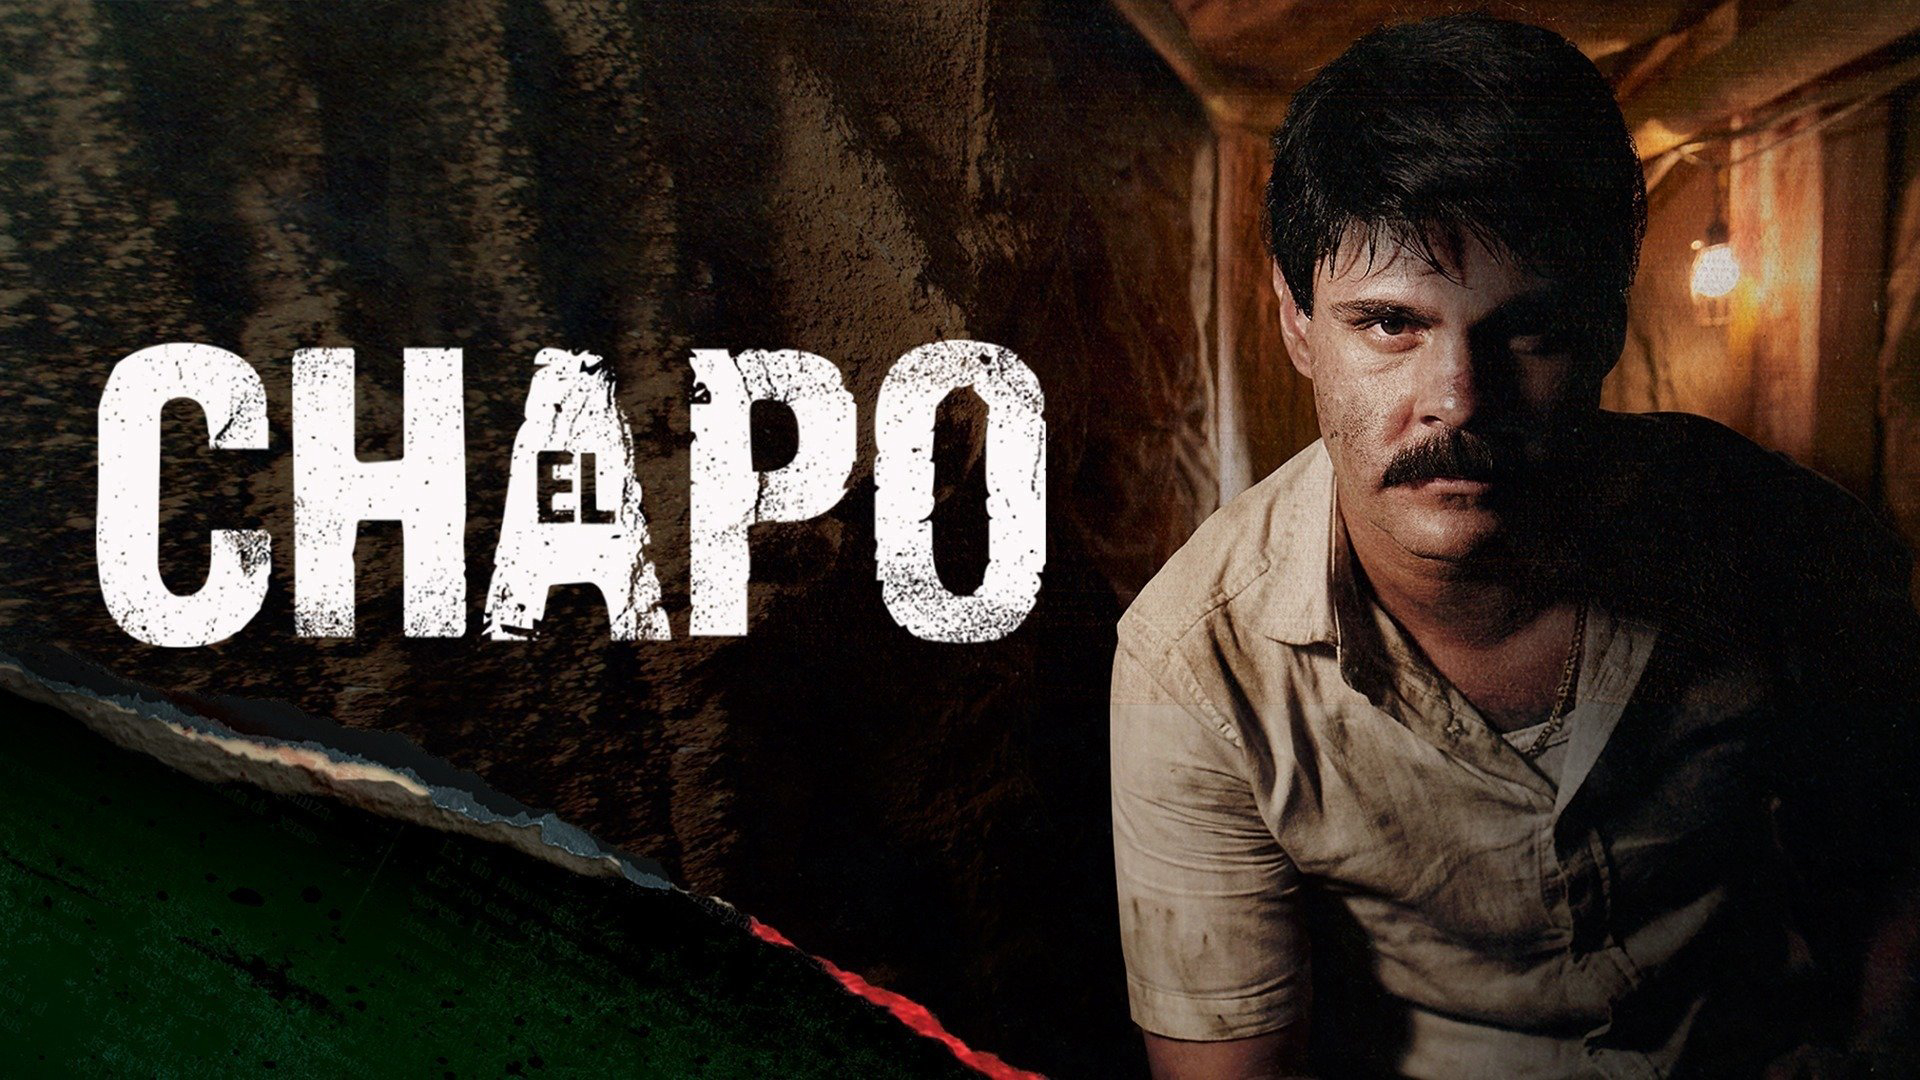 Trùm Ma Túy El Chapo (Phần 1) - El Chapo (Season 1) (2017)